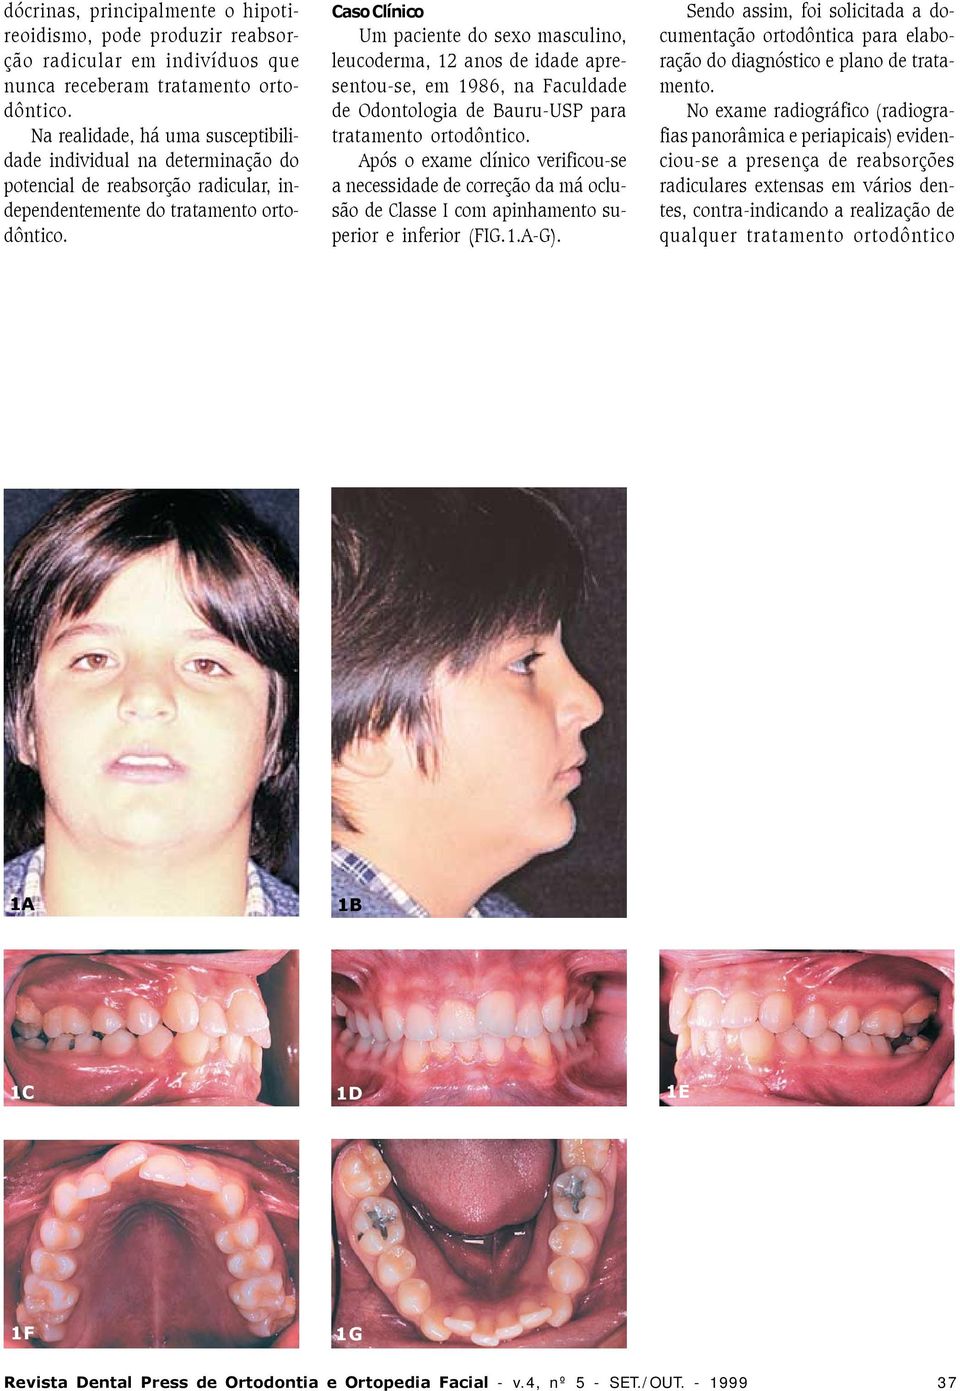 Caso Clínico Um paciente do sexo masculino, leucoderma, 12 anos de idade apresentou-se, em 1986, na Faculdade de Odontologia de Bauru-USP para tratamento ortodôntico.